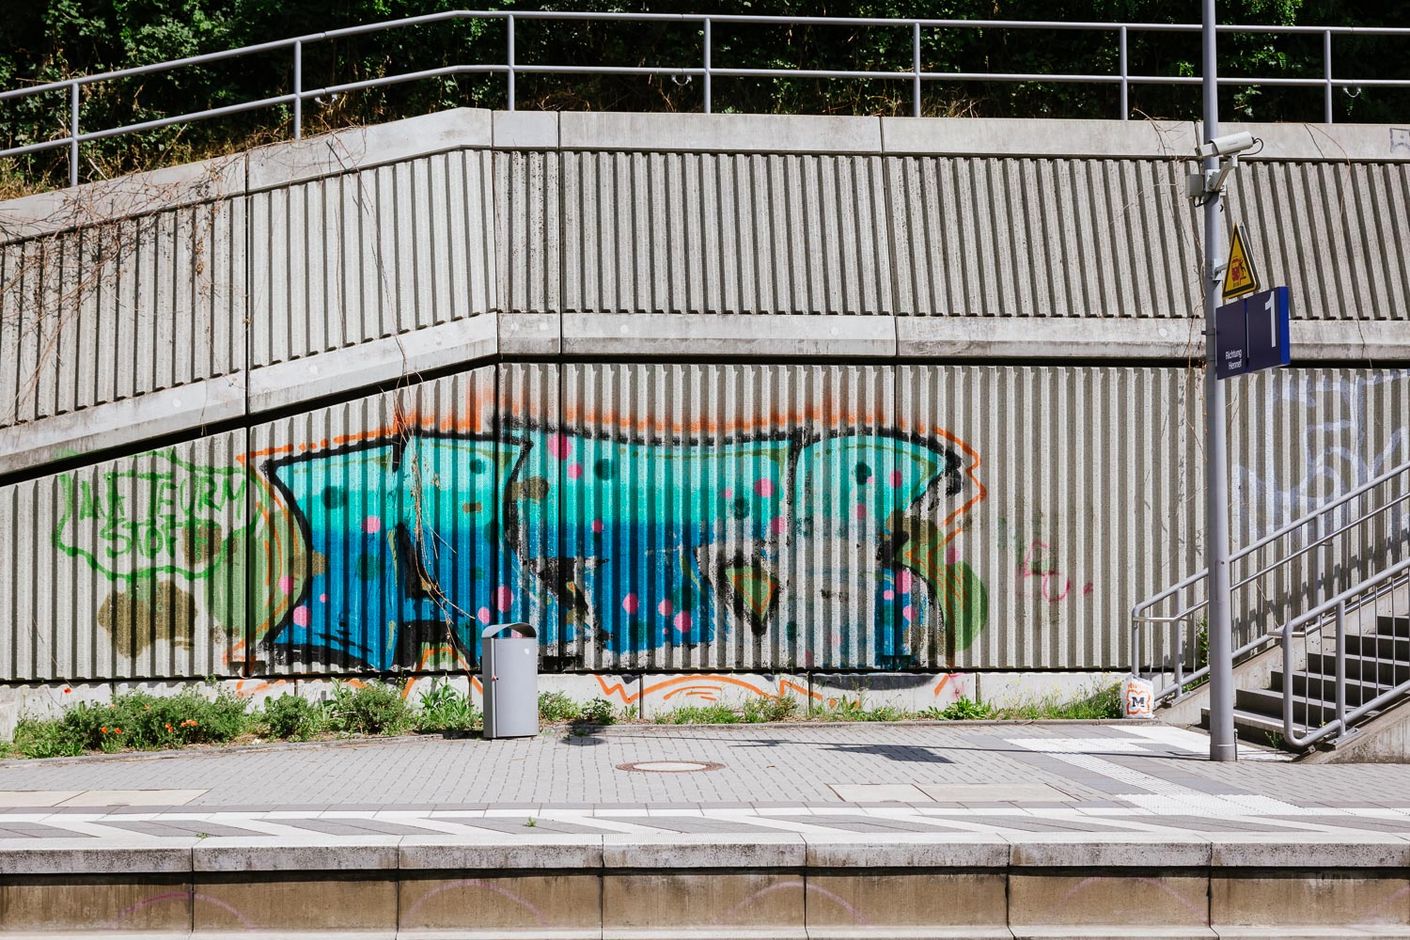 Das Bild zeigt ein großflächiges Graffiti an der Außenwand einer Station.